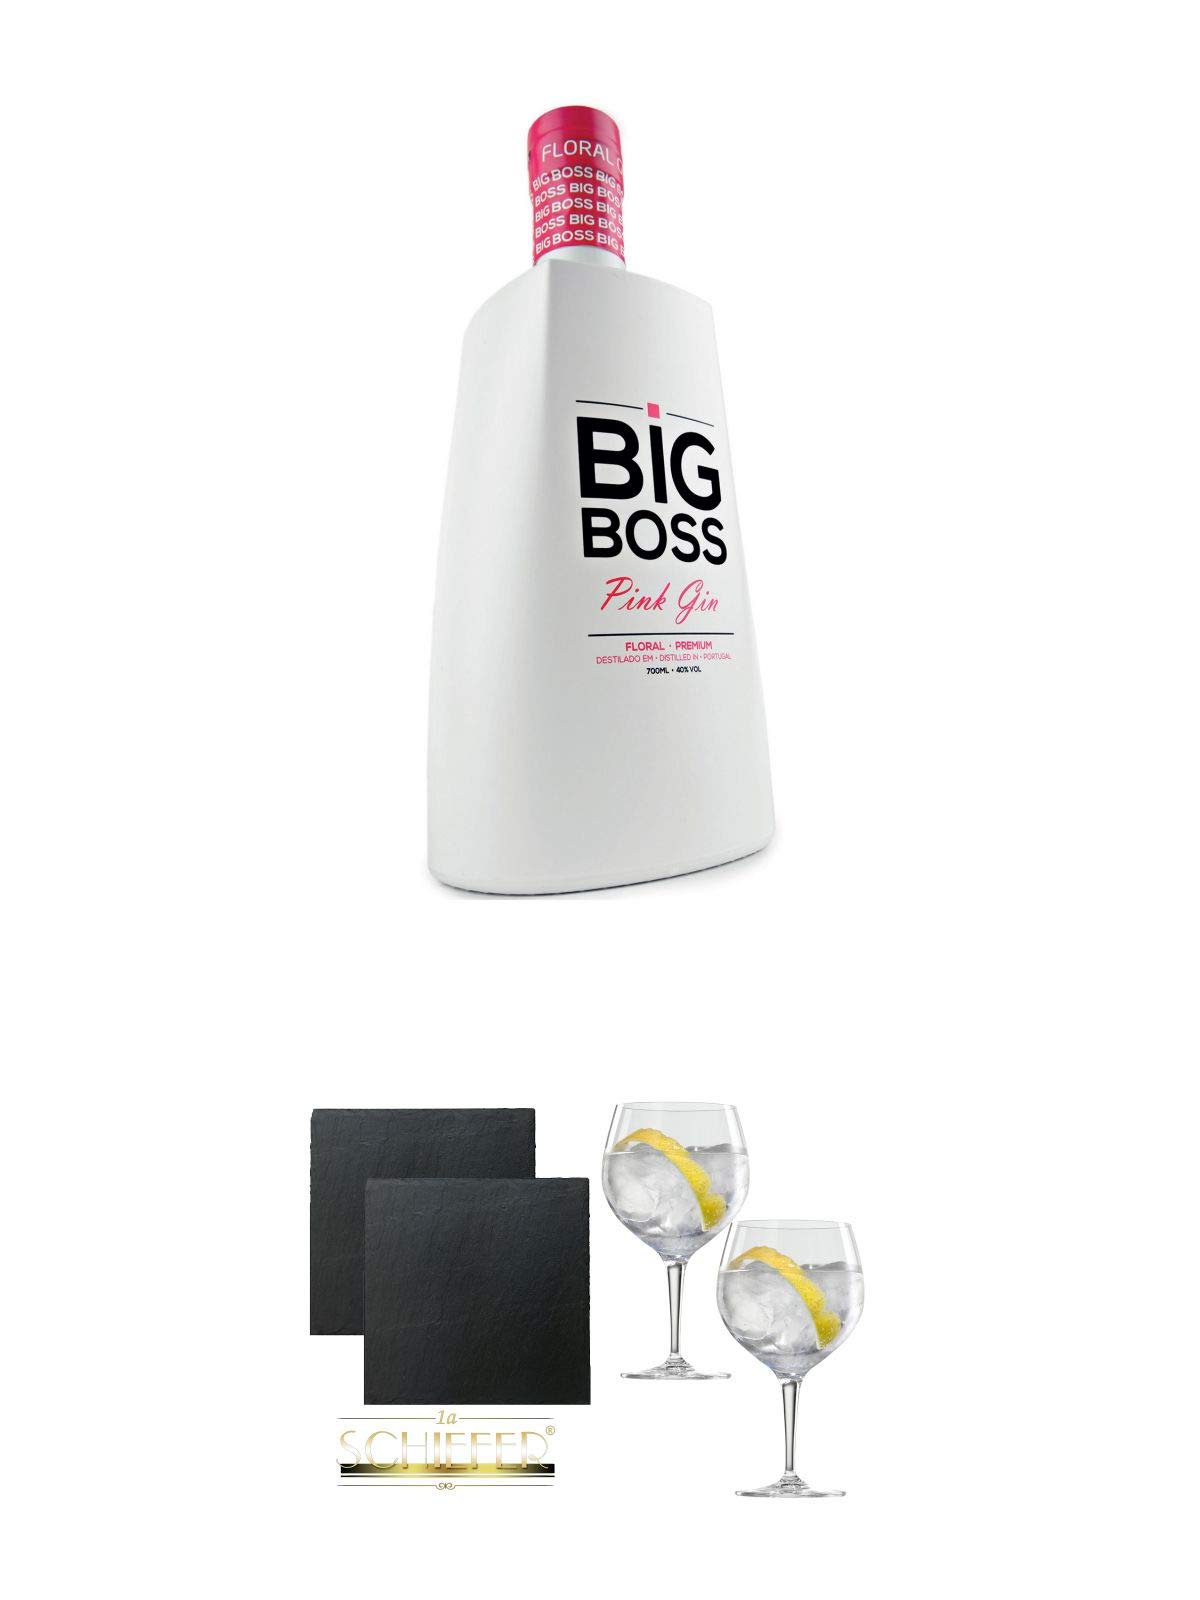 Big Boss Dry Gin PINK 40% 0,7 Liter + Schiefer Glasuntersetzer eckig ca. 9,5 cm Ø 2 Stück + Spiegelau Gin & Tonic 4390179 2 Gläser